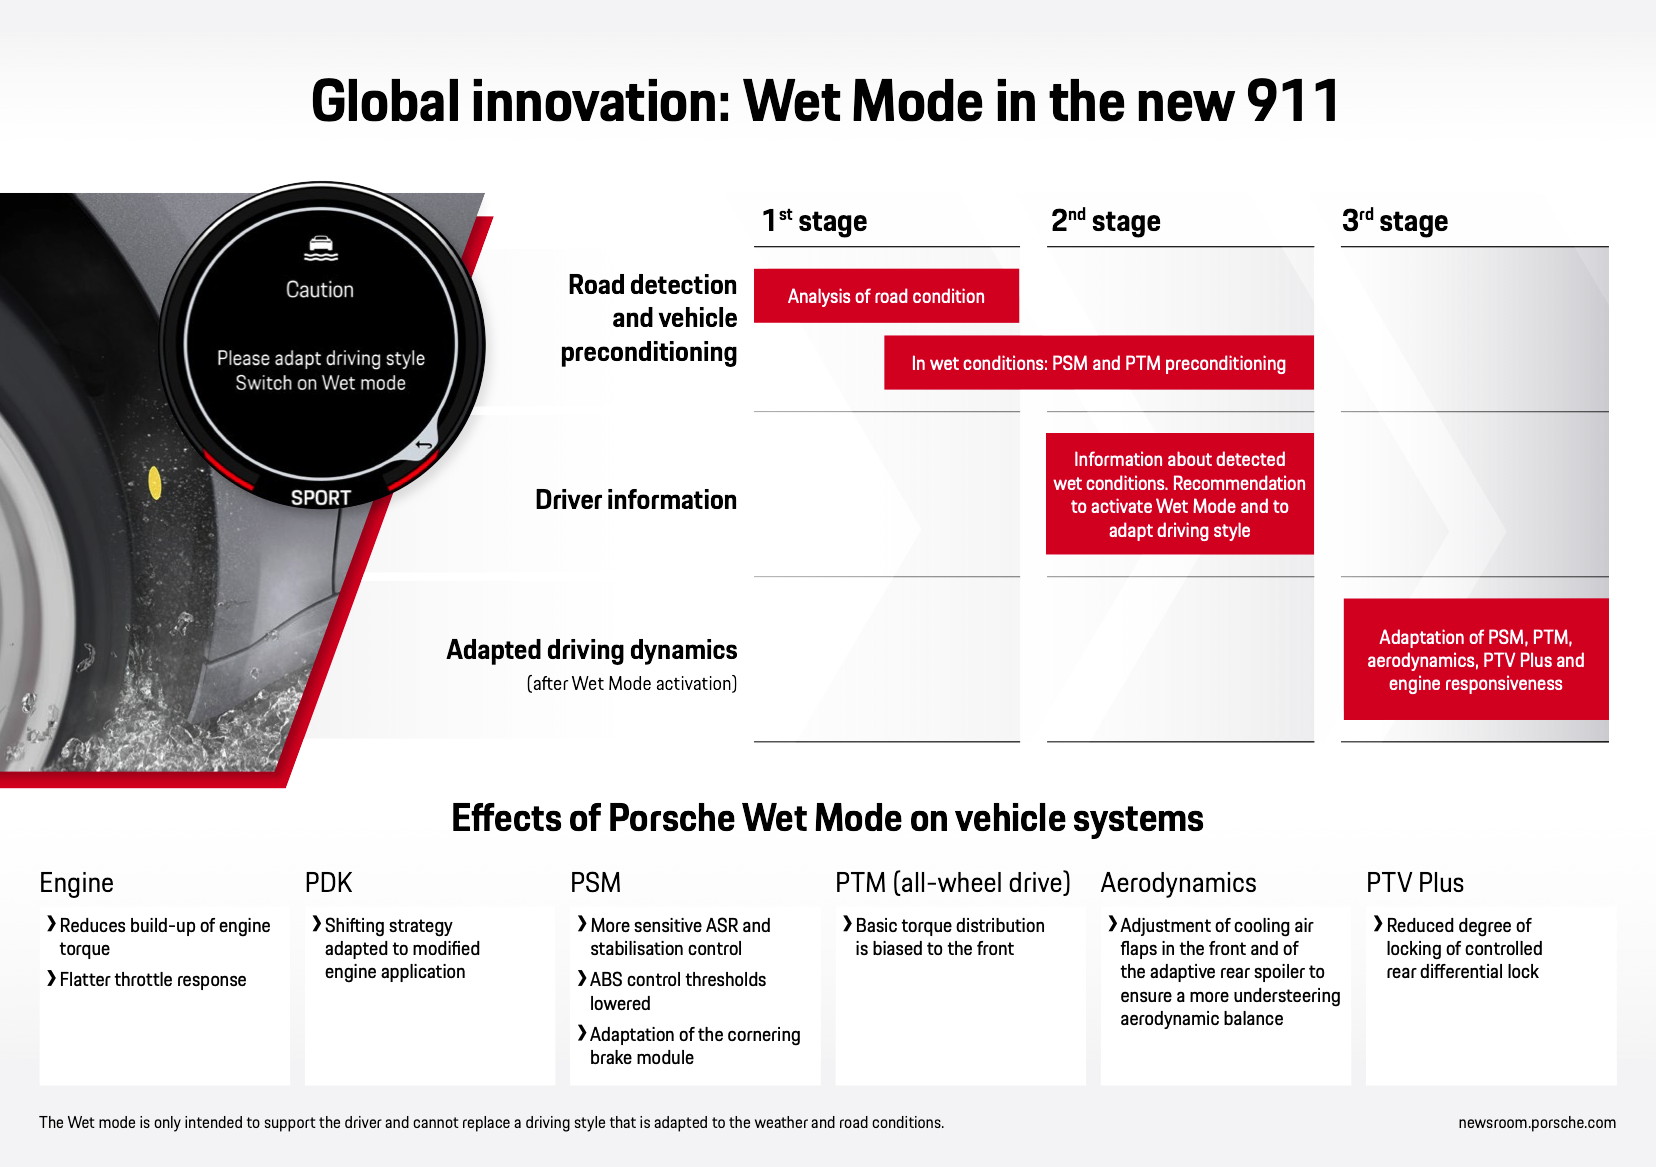 Modo Porsche Wet en el nuevo 911, infografía, 2019, Porsche AG